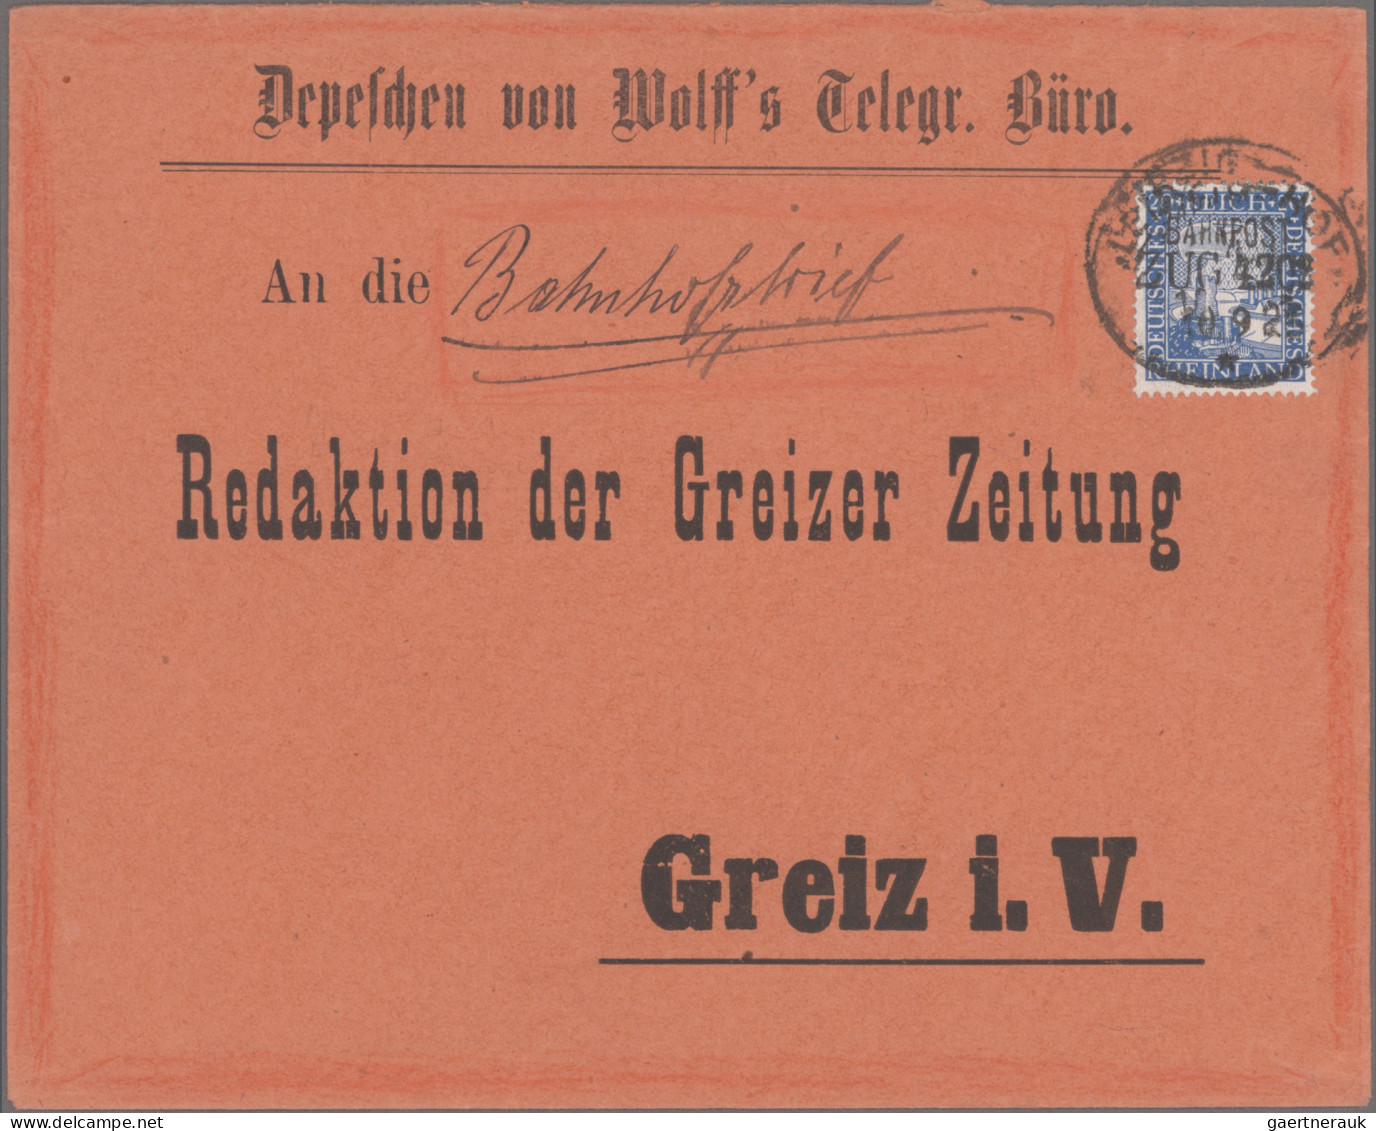 Deutsches Reich - Weimar: 1925/1926, Rheinlandfeier, außergewöhnliche Spezialsam